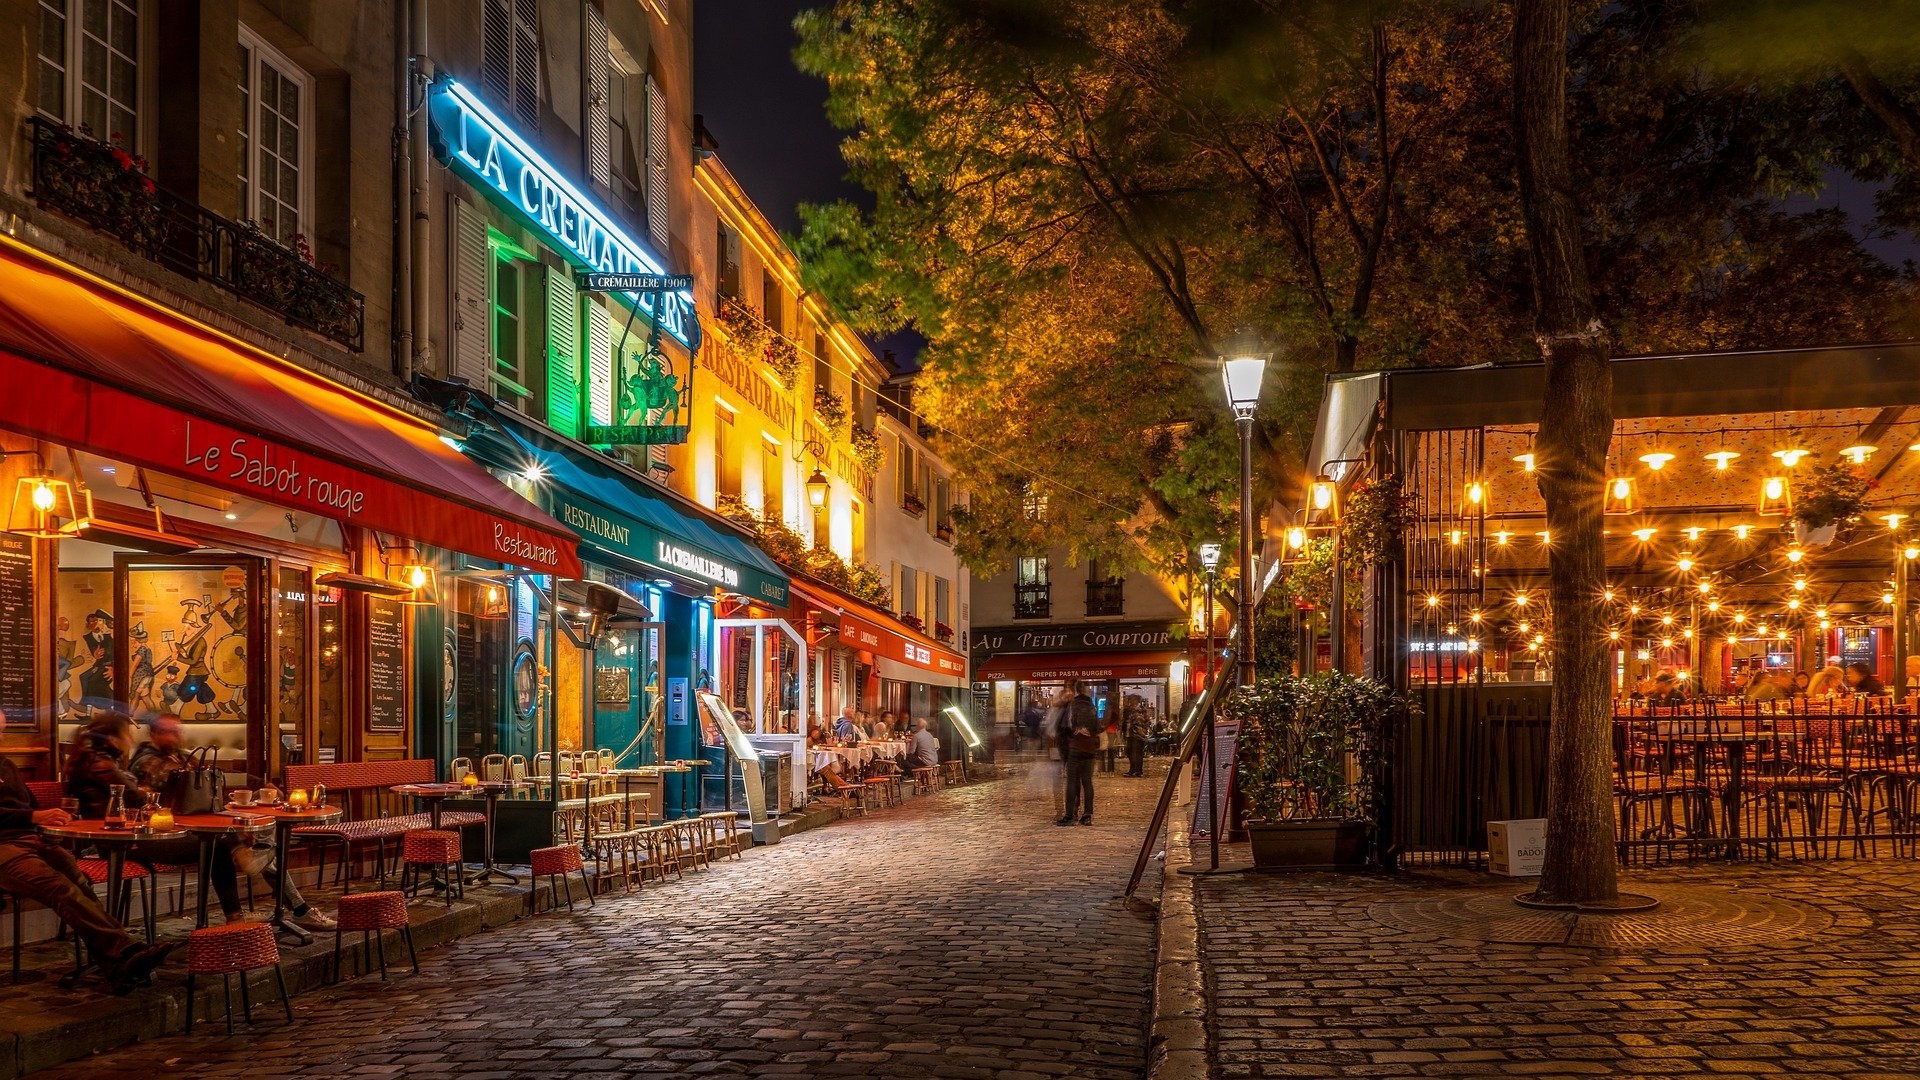 Γαλλία: Σταδιακή άρση μέτρων ανακοίνωσε ο Μακρόν – Πότε ανοίγουν καταστήματα, μπαρ, εστιατόρια και πολιτιστικοί χώροι